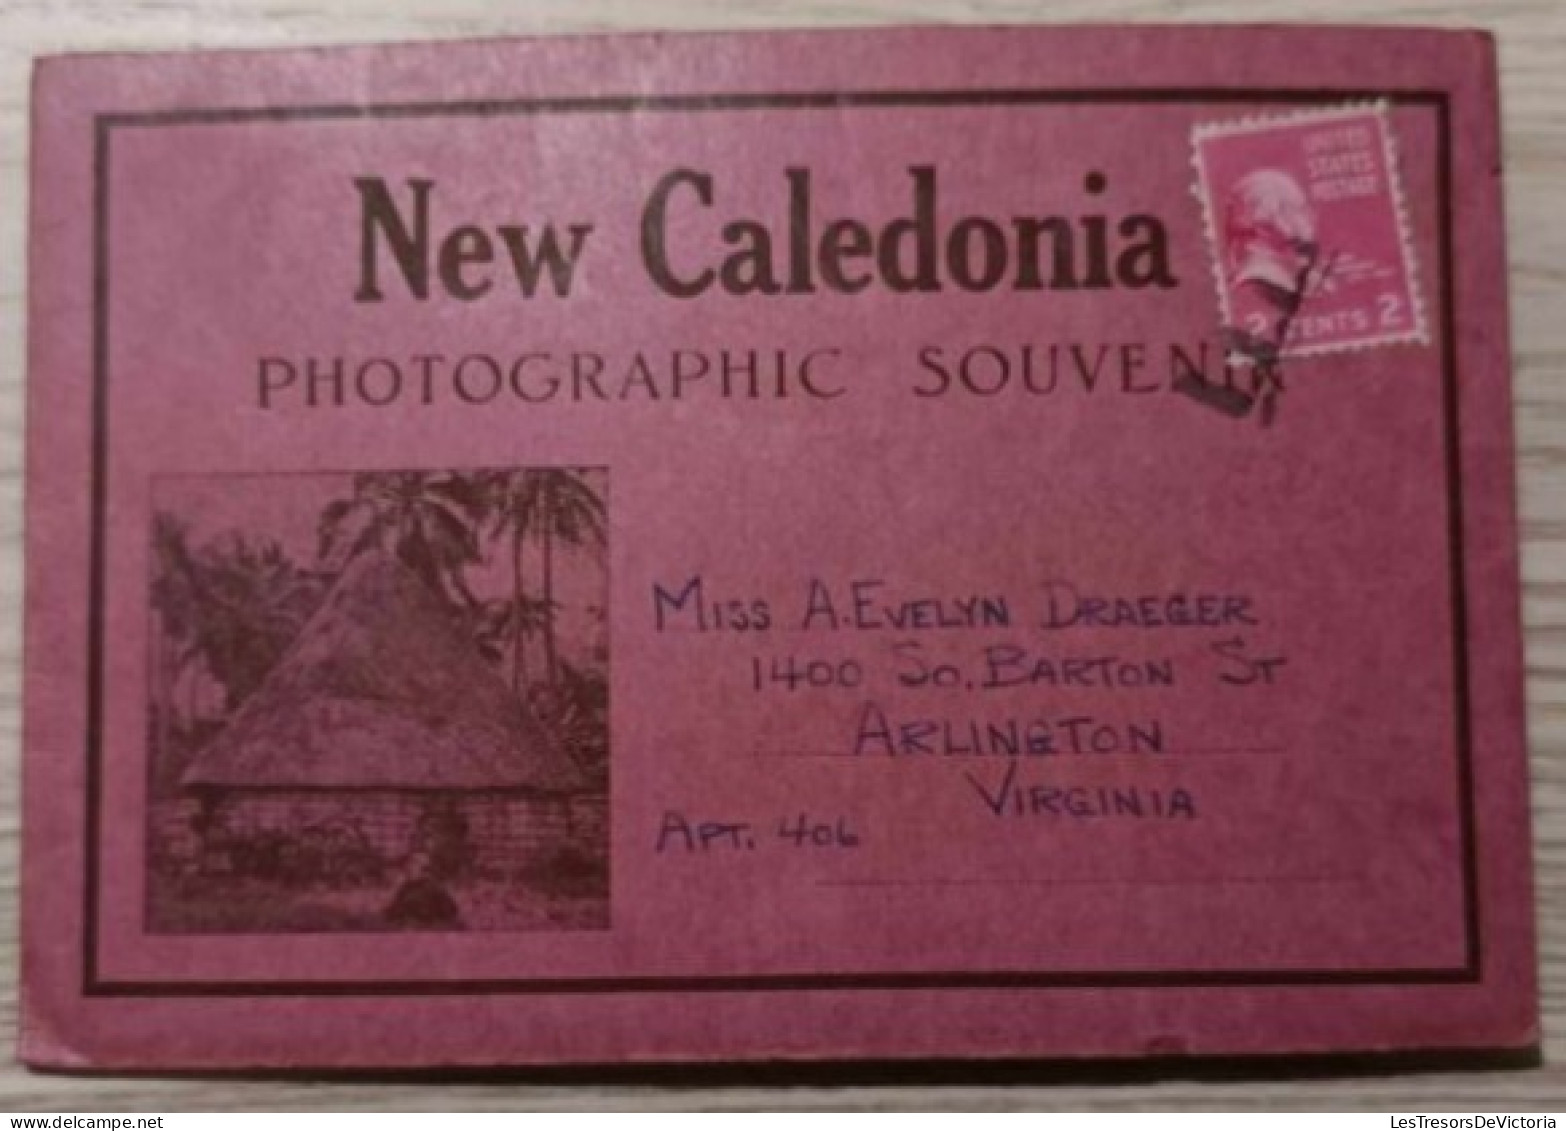 Nouvelle Calédonie - Carnet De 6 Cartes De Vues (resto Verso) Et Une Panoramique De Noumea - Carte Postale Ancienne - Nuova Caledonia